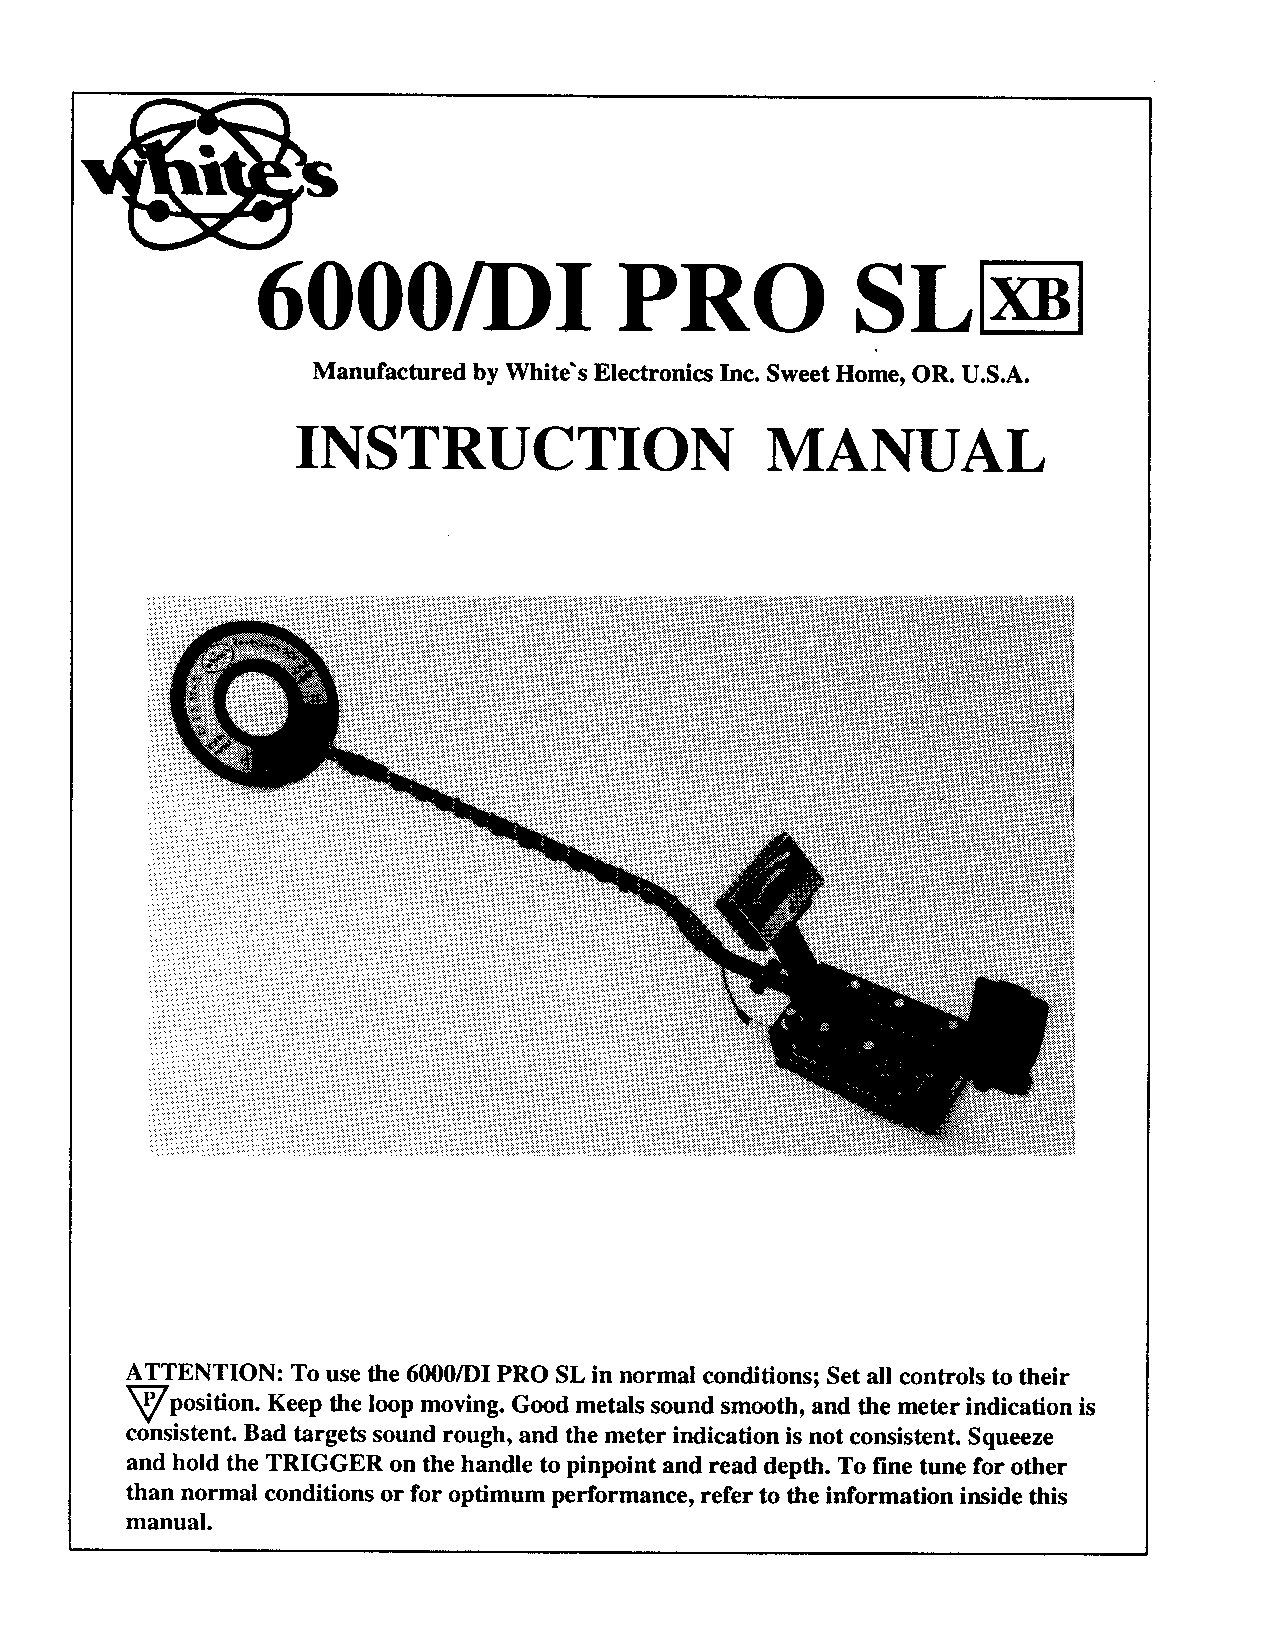 Whites Electronics CM 6000 DI PRO SL XB User Manual